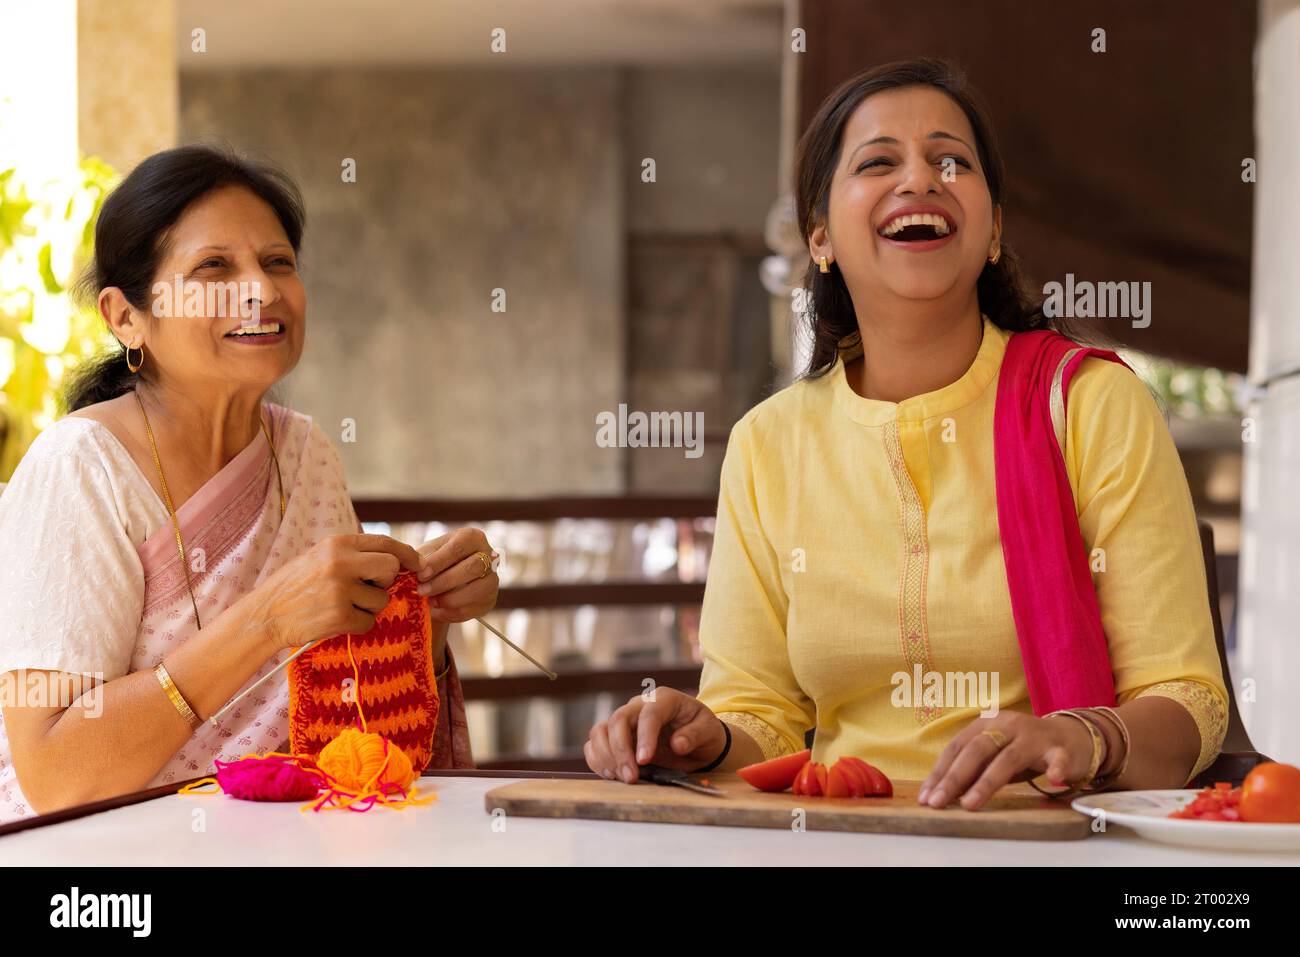 Schwiegermutter und Schwiegertochter schauen mit einem Lächeln weg, während sie auf ihrem Balkon Hausarbeiten machen Stockfoto